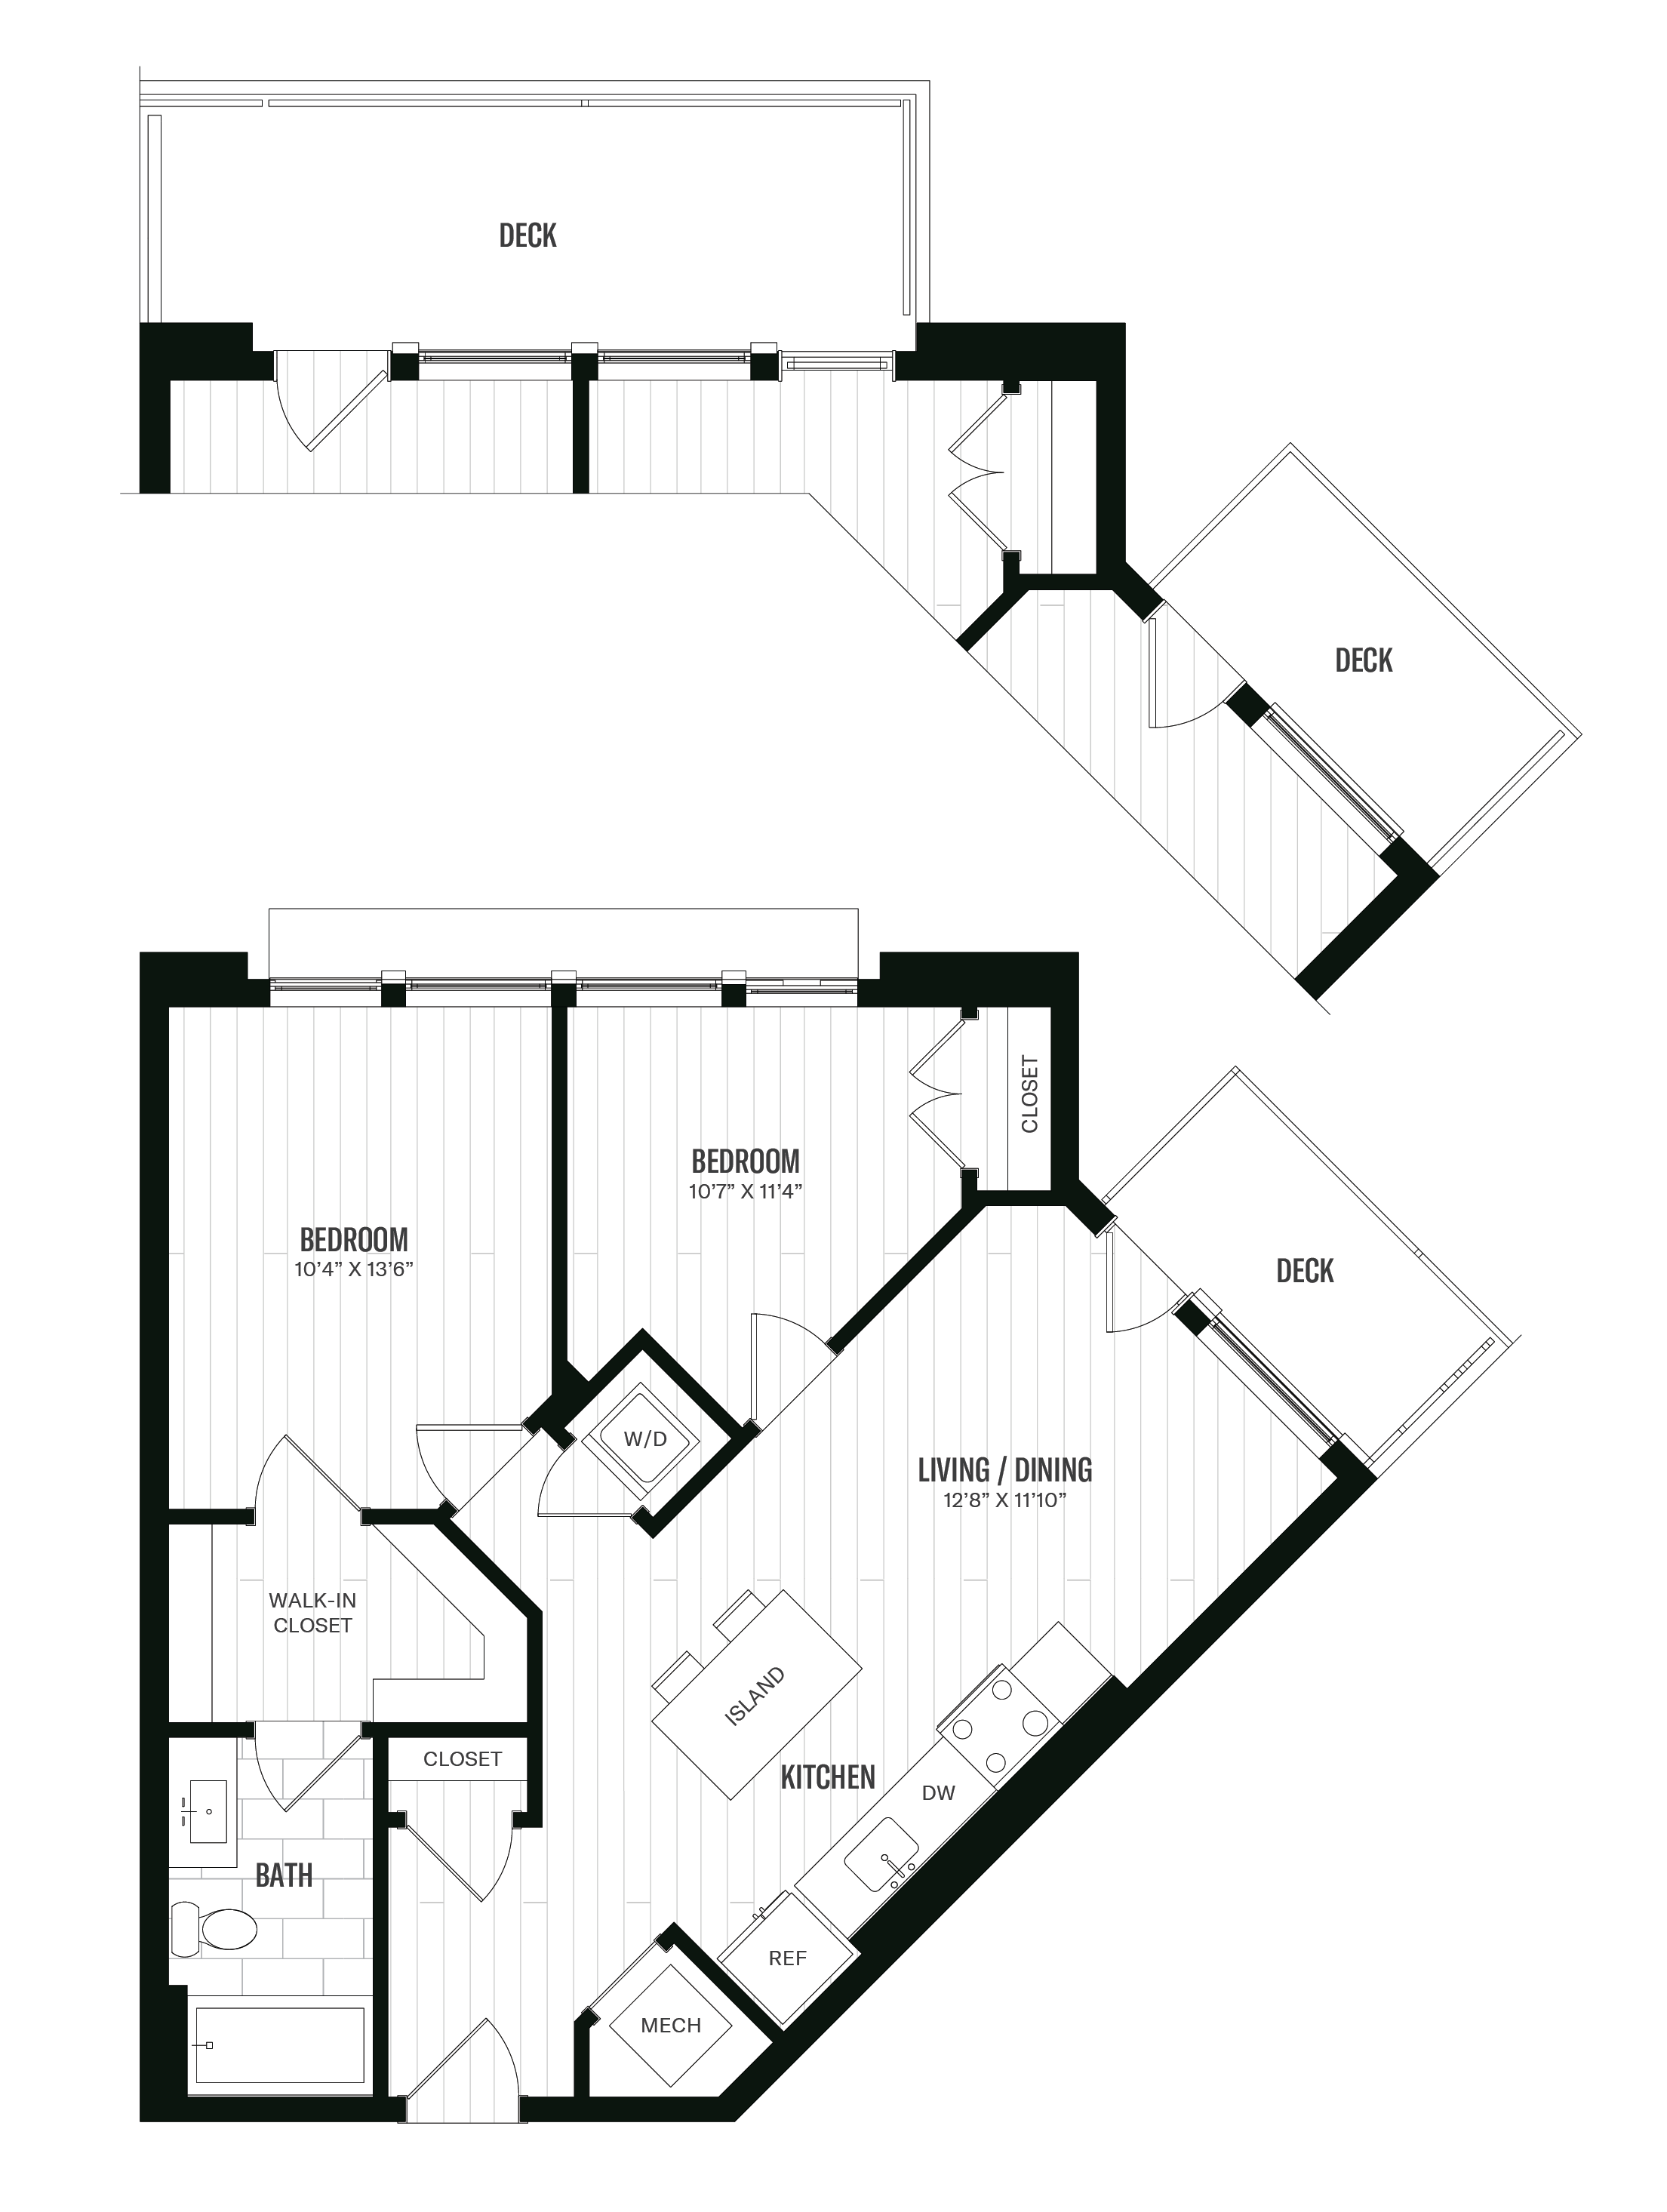 Floorplan image of unit 616